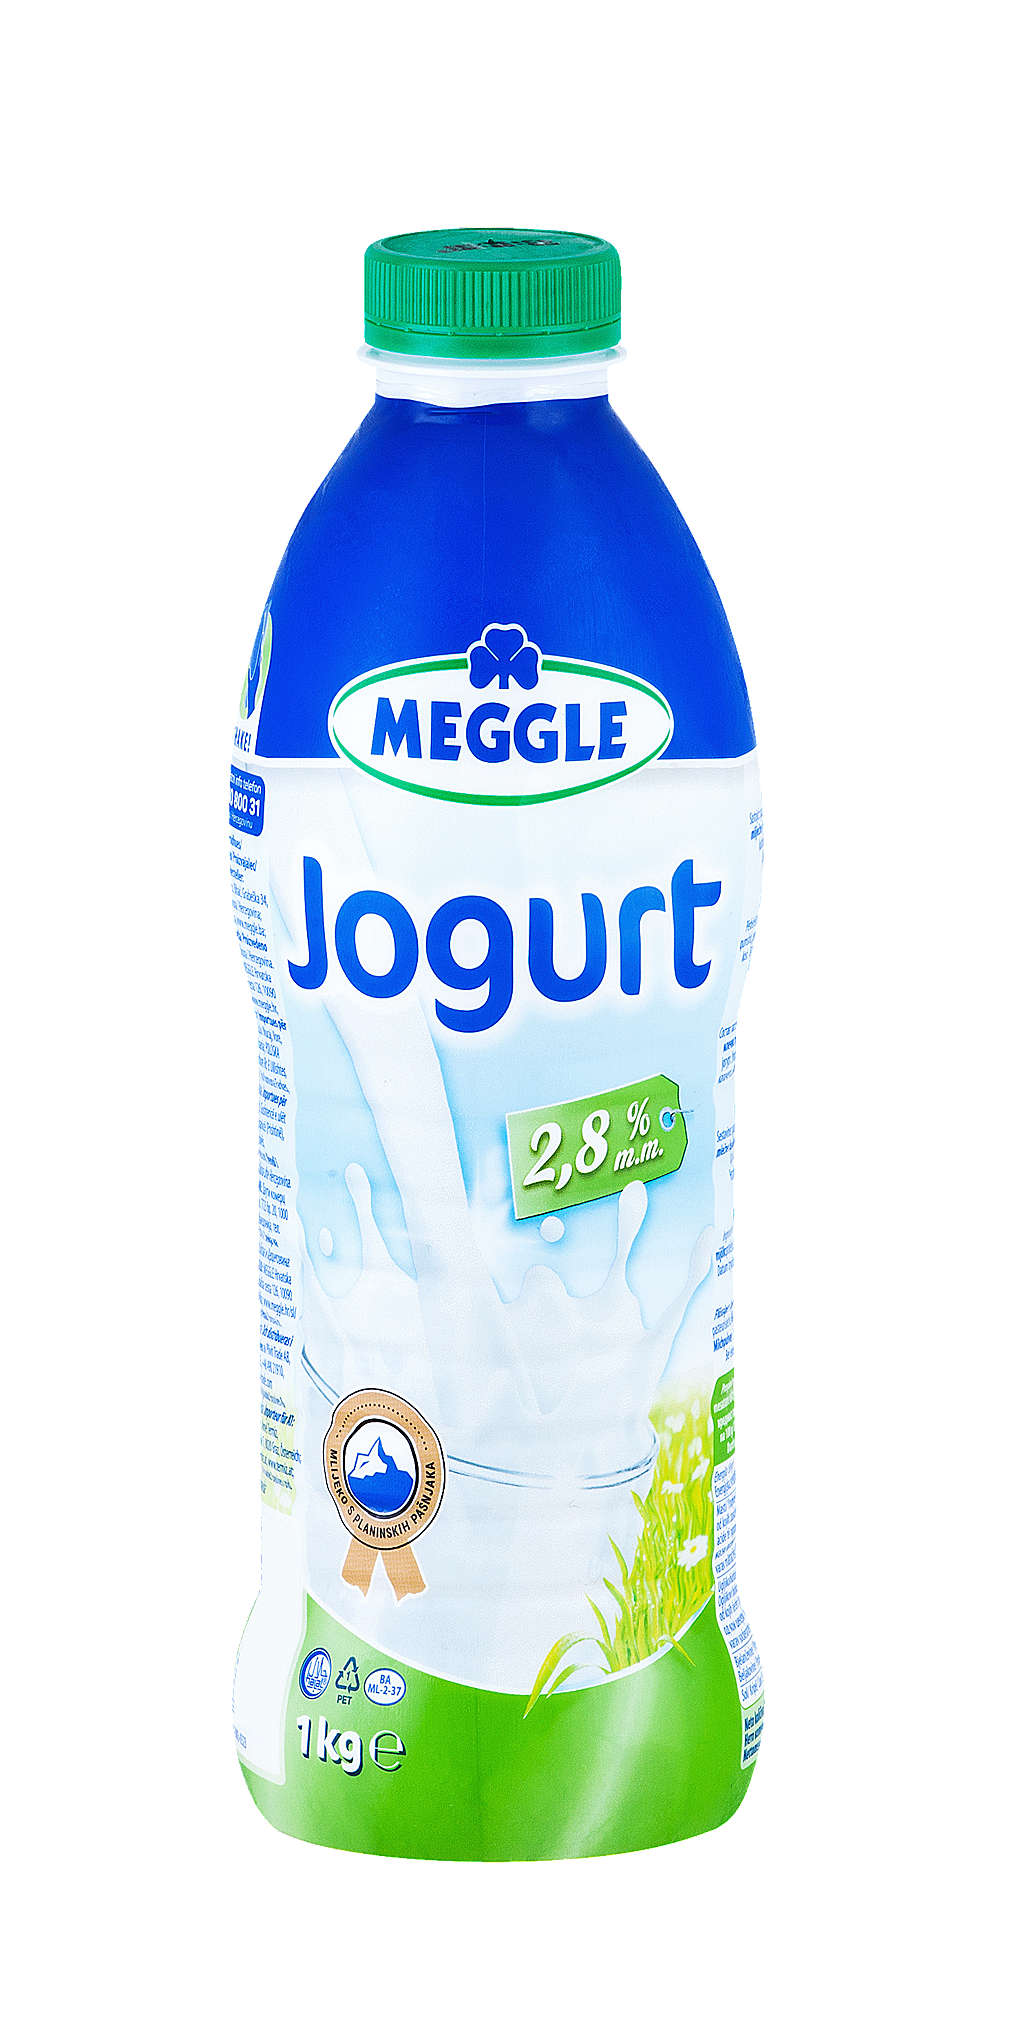 Fotografija ponude Meggle Tekući jogurt, 2,8% m.m.